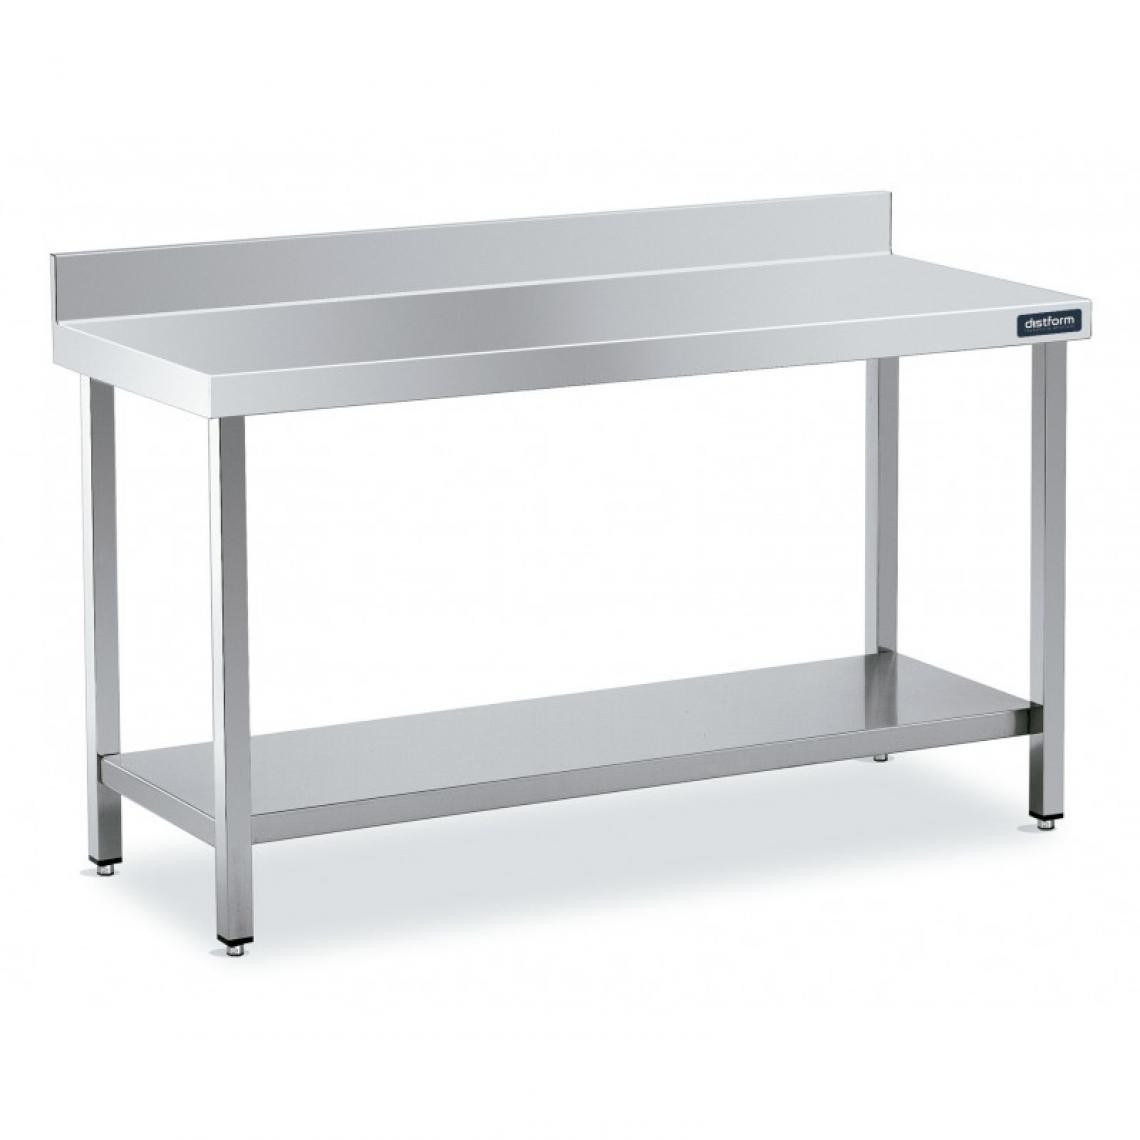 DISTFORM - Table Adossée en Inox avec 1 étagère Profondeur 600 mm - Distform - Acier inoxydable2200x600 - Tables à manger